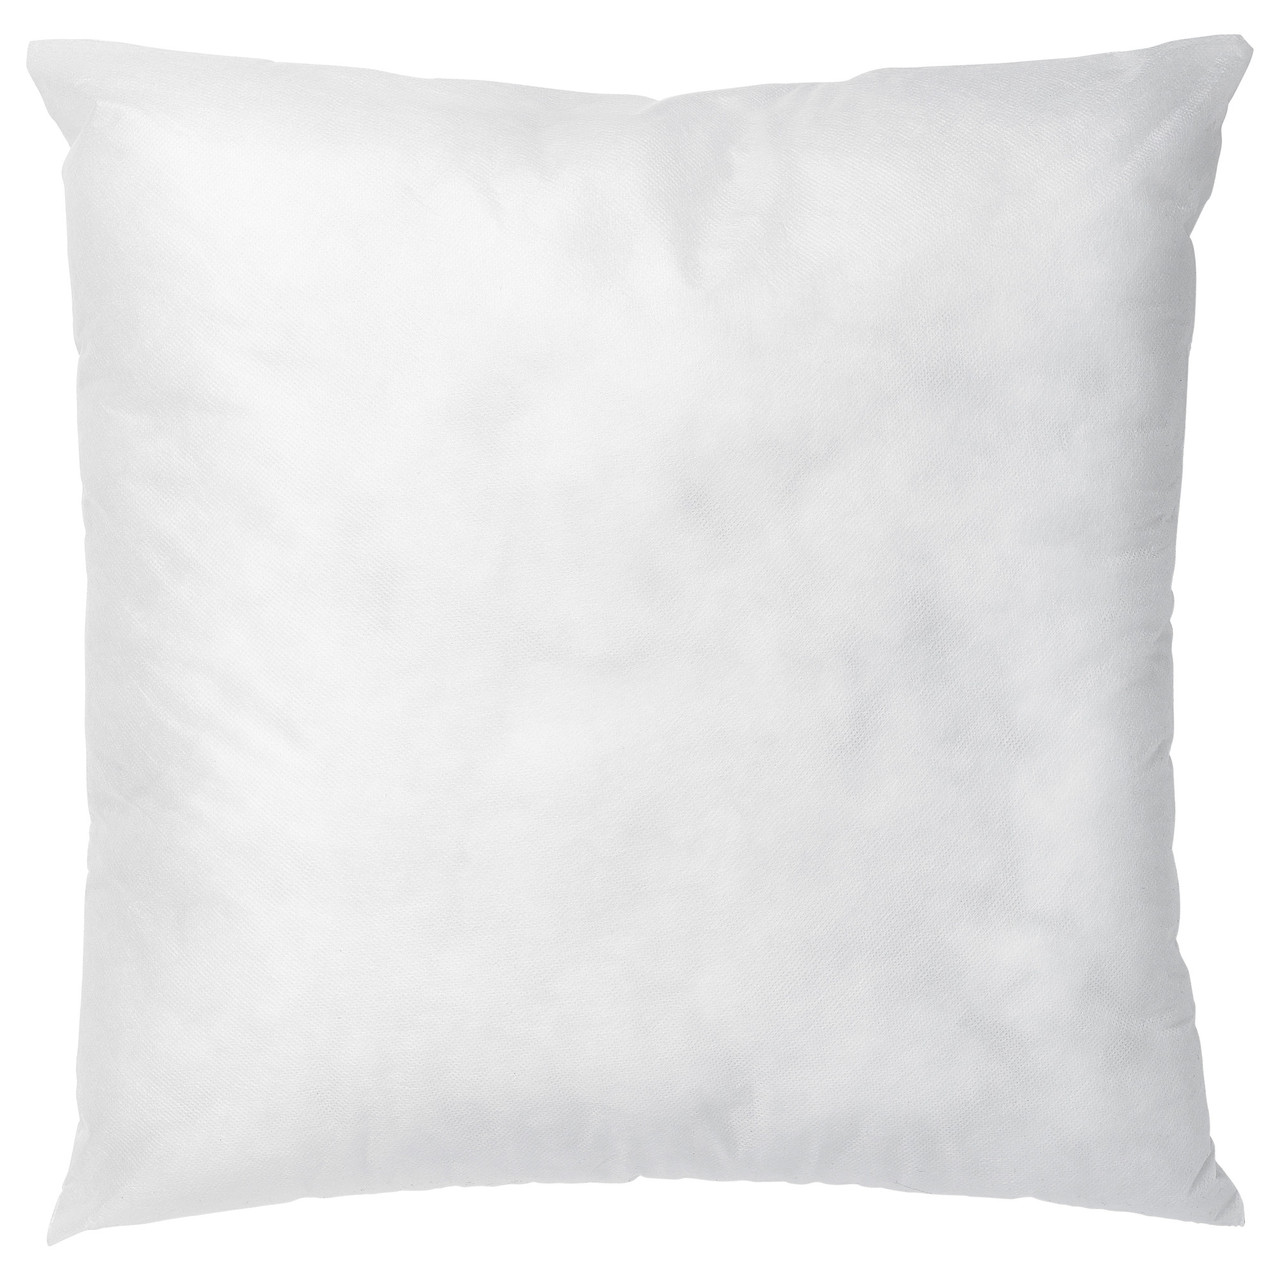 ИННЕР Подушка, белый, 50x50 см 60262193 ИКЕА, IKEA, INNER